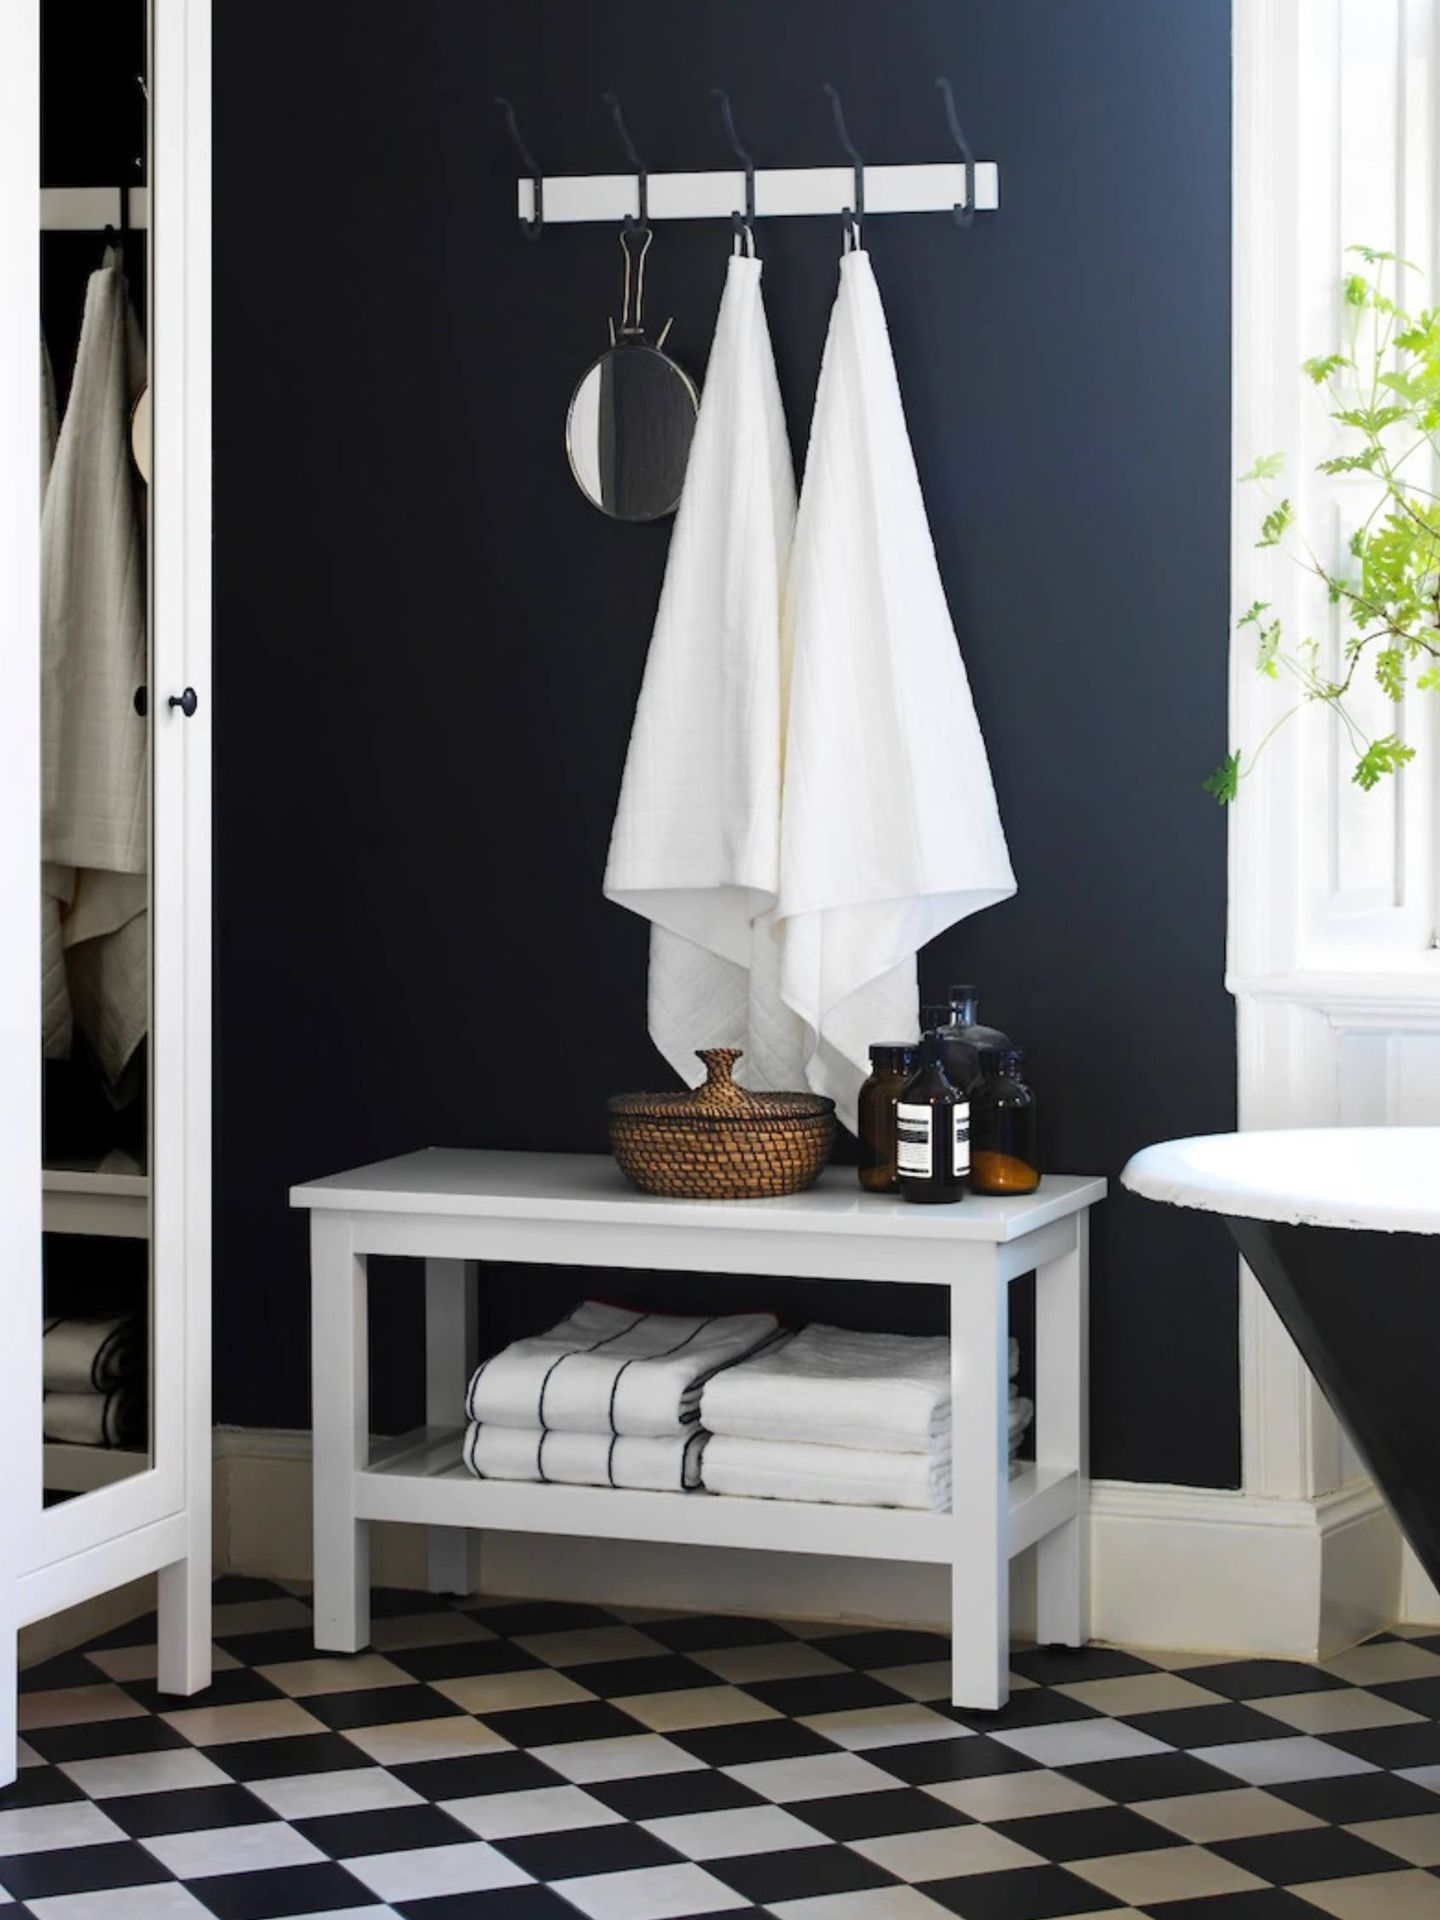 Soluciones prácticas de Ikea para un baño ordenado. (Cortesía)